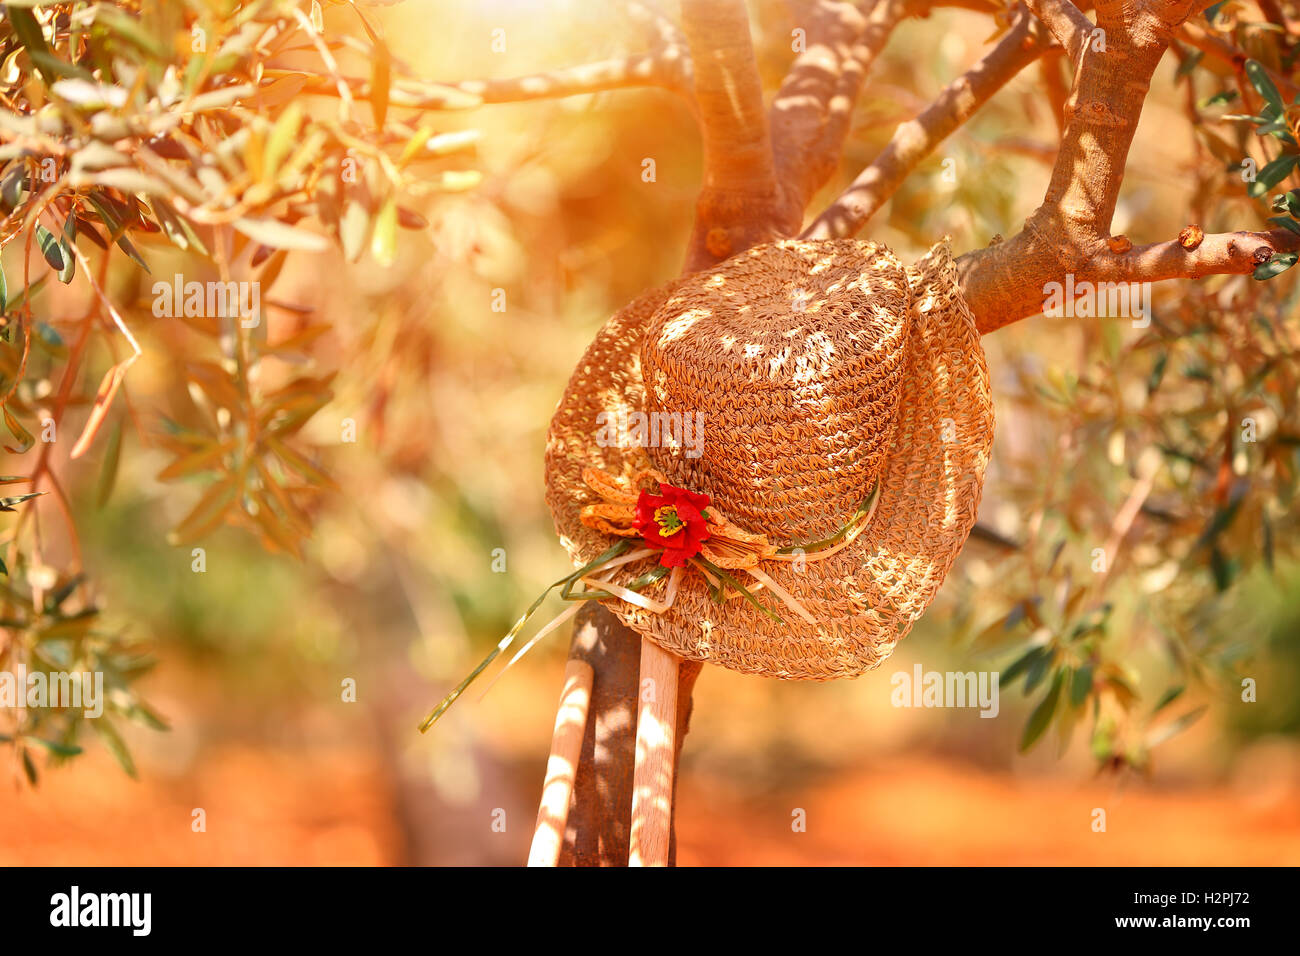 Womens sombrero de paja sobre el olivo cerca de herramientas de jardinería en la brillante luz del atardecer de otoño, temporada de cosecha Foto de stock